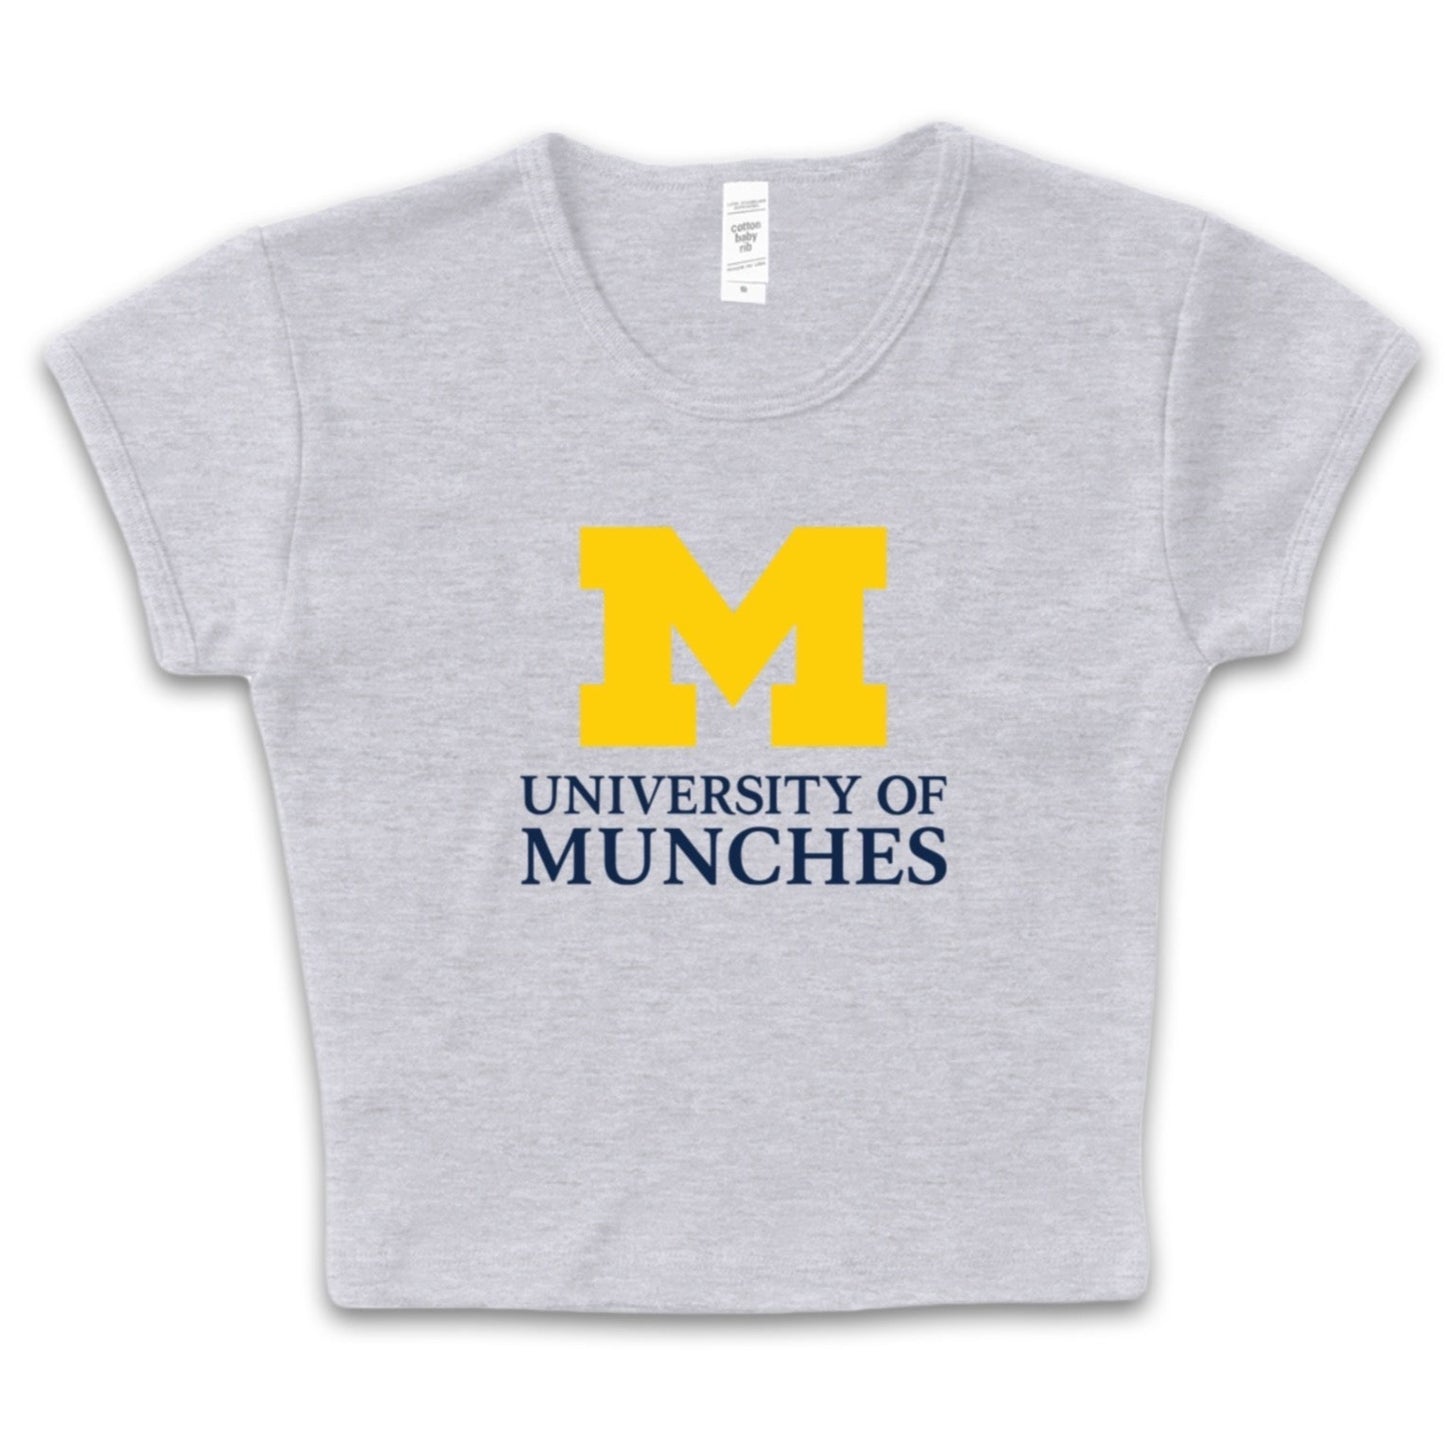 Michigan Munches Uni Baby tee